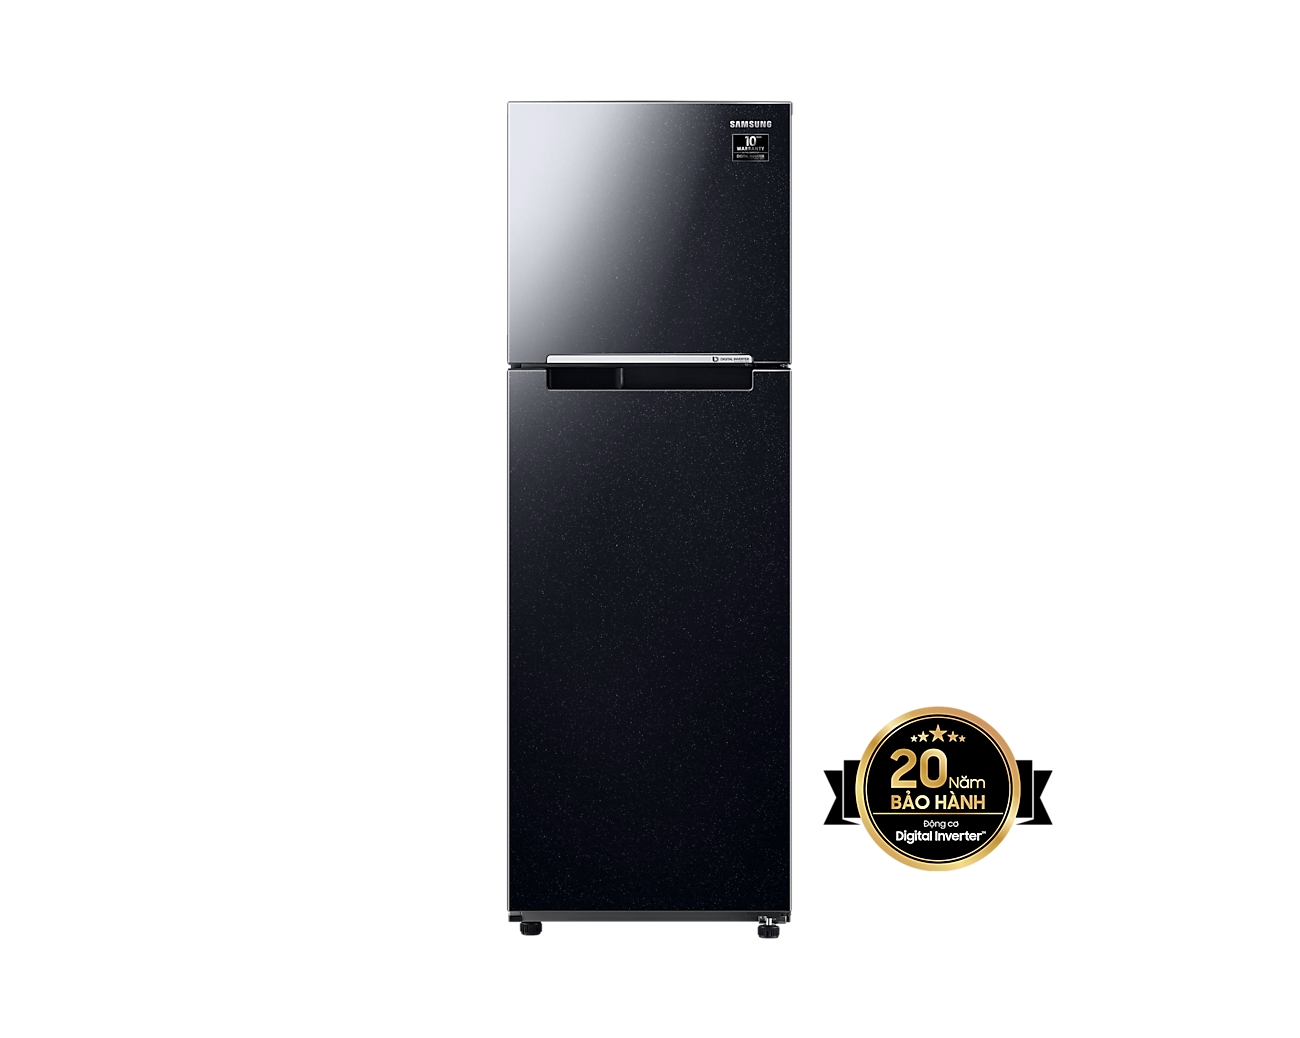 Tủ lạnh Samsung hai cửa Digital Inverter 264L (RT25M4032BU) - Miễn phí giao + lắp đặt toàn quốc- Hàng Chính Hãng